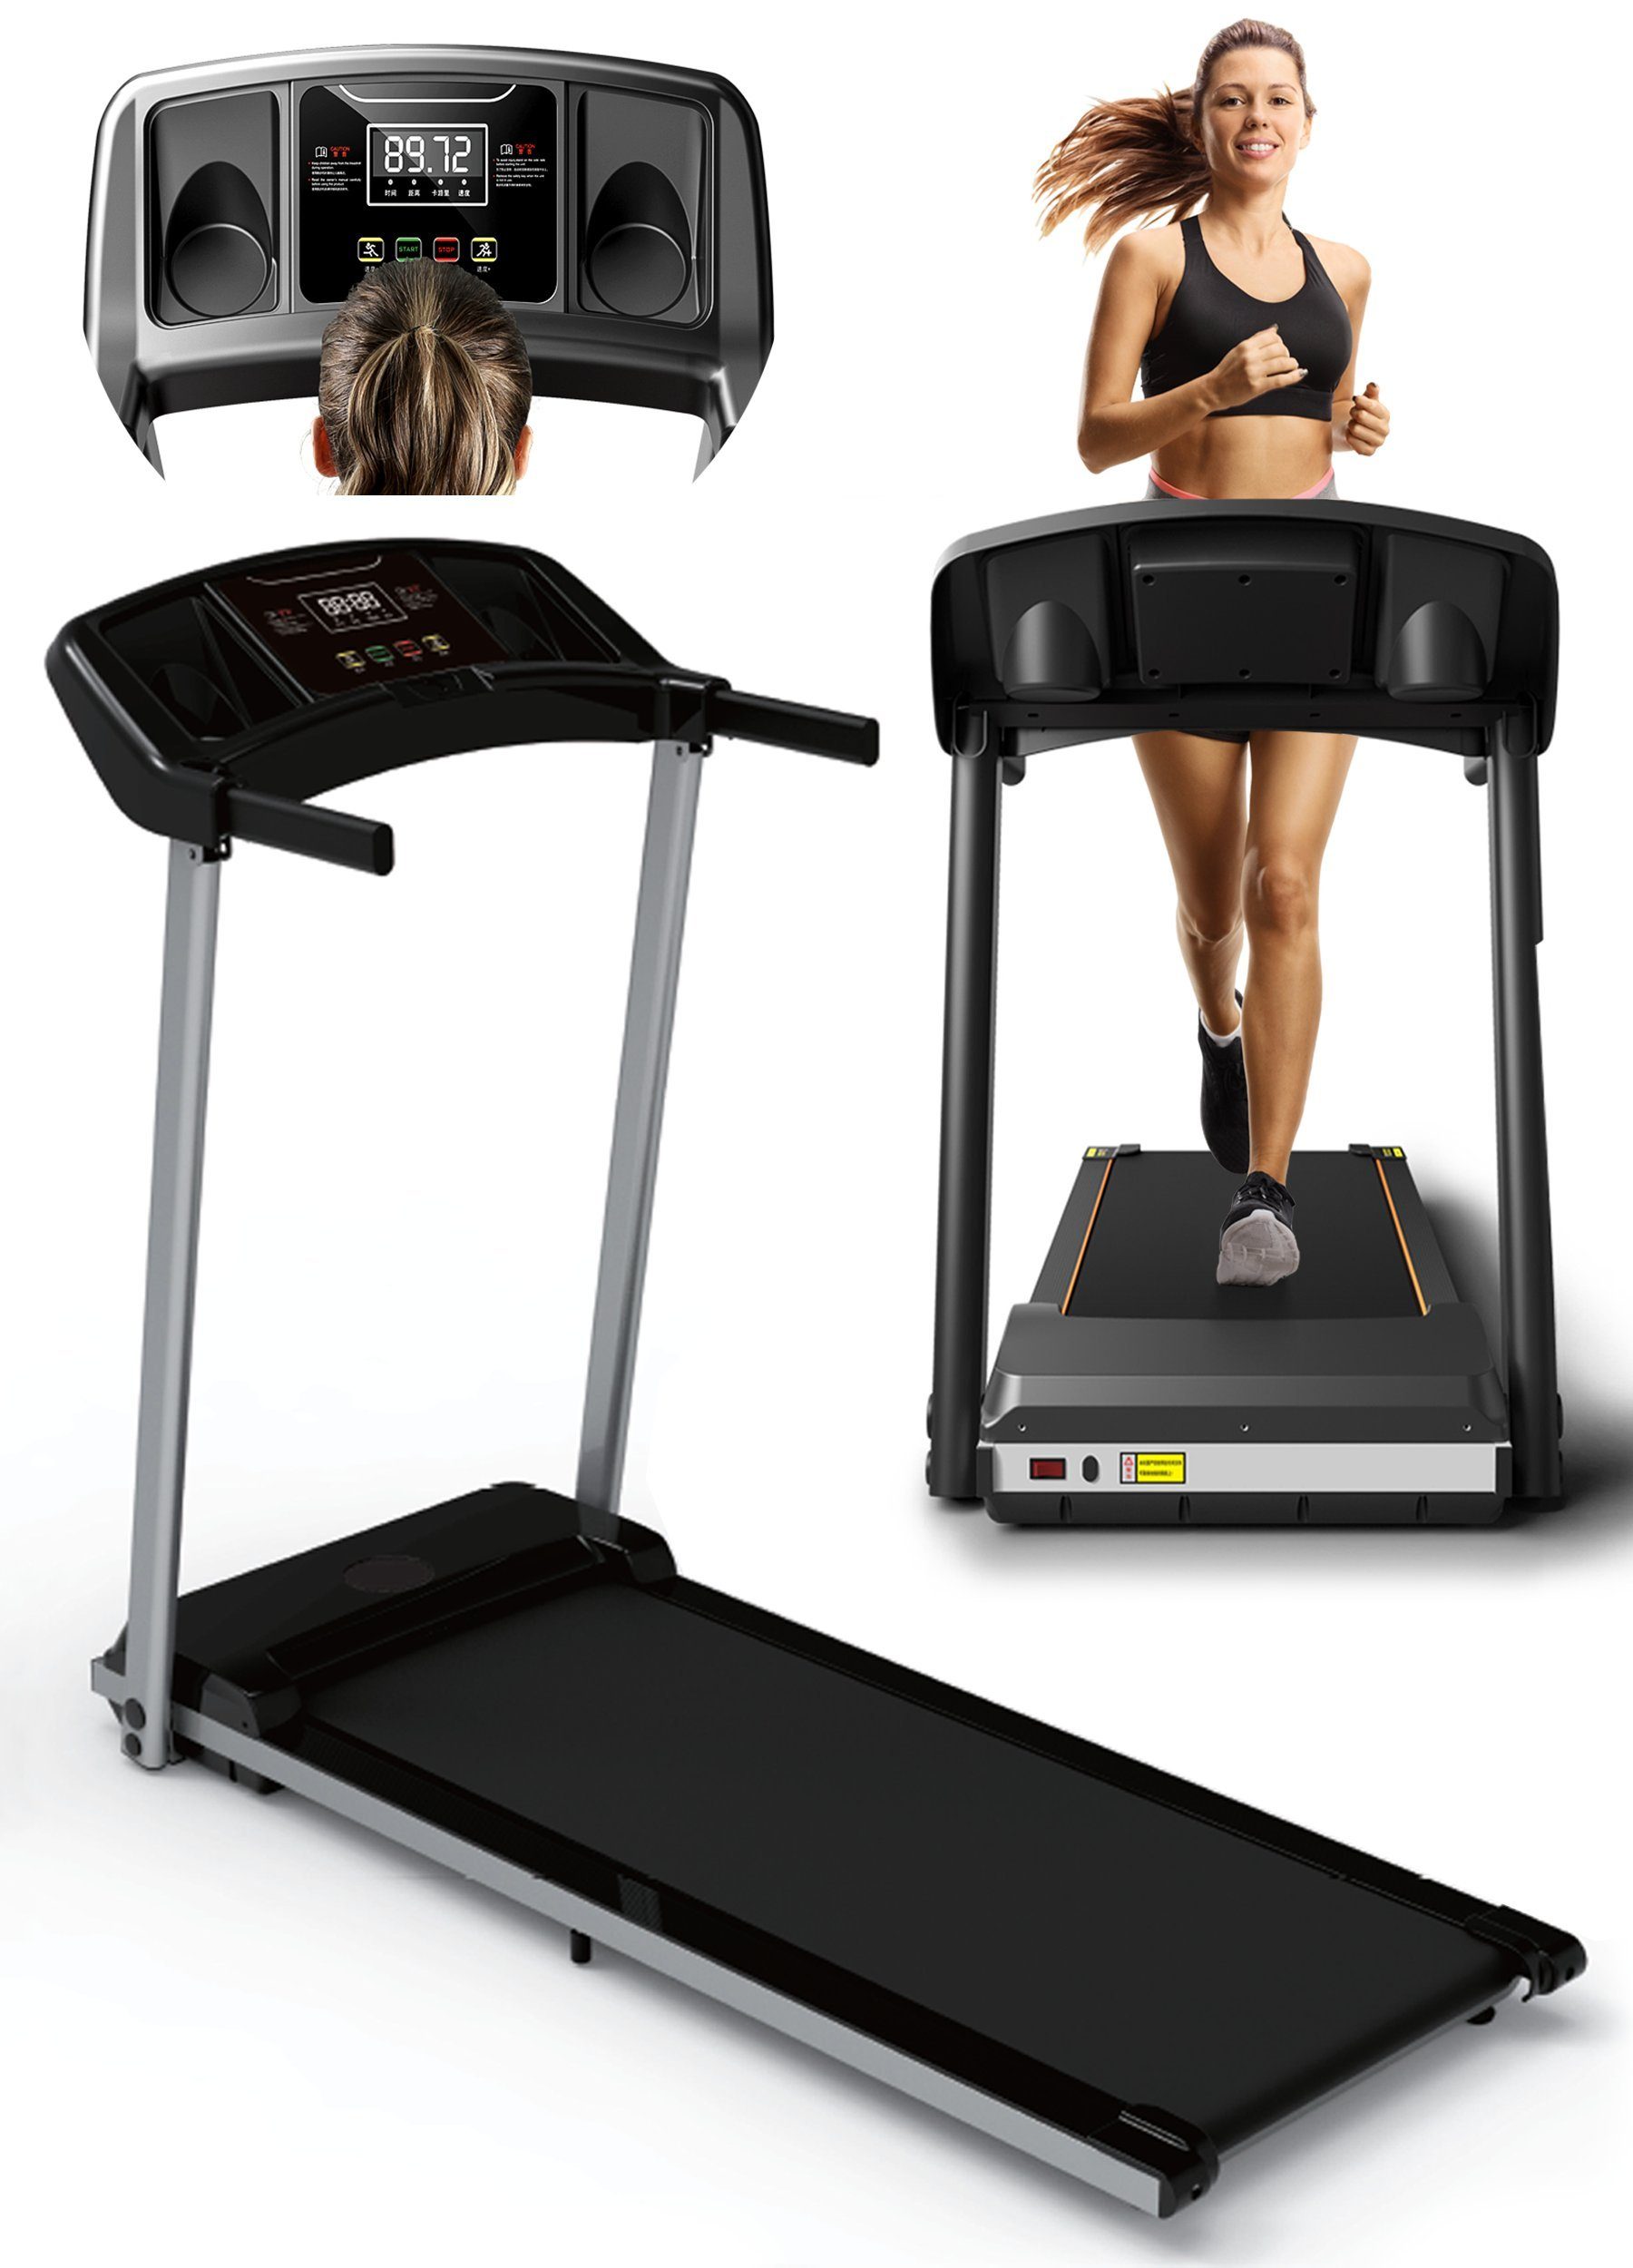 VENDOMNIA Laufband Treadmill - LCD-Display, 1000W, Lauffläche 100x38cm -  (Trainingszeit, Distanz, Kalorienverbrauch, Geschwindigkeit), klappbar,  elektrisch, bis 6Km/h